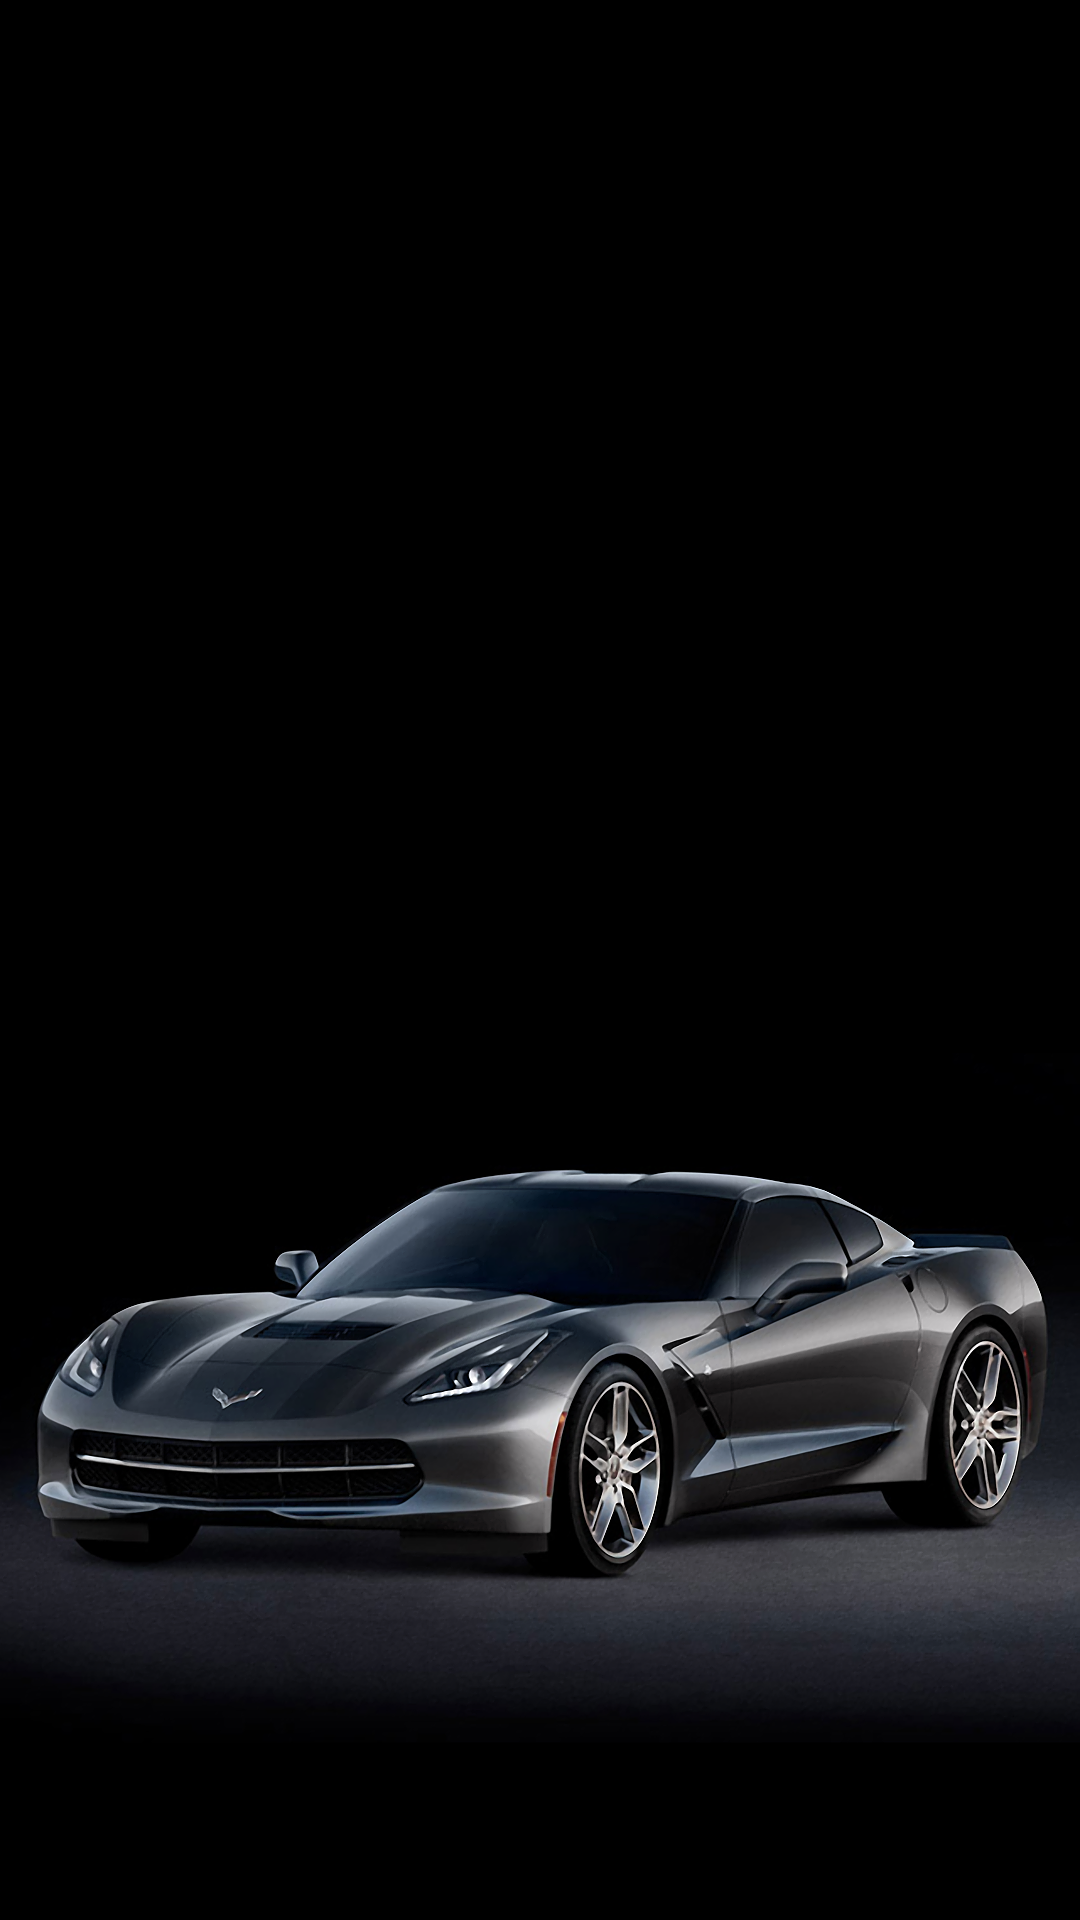 Corvette Stingray Side iPhone Wallpaper